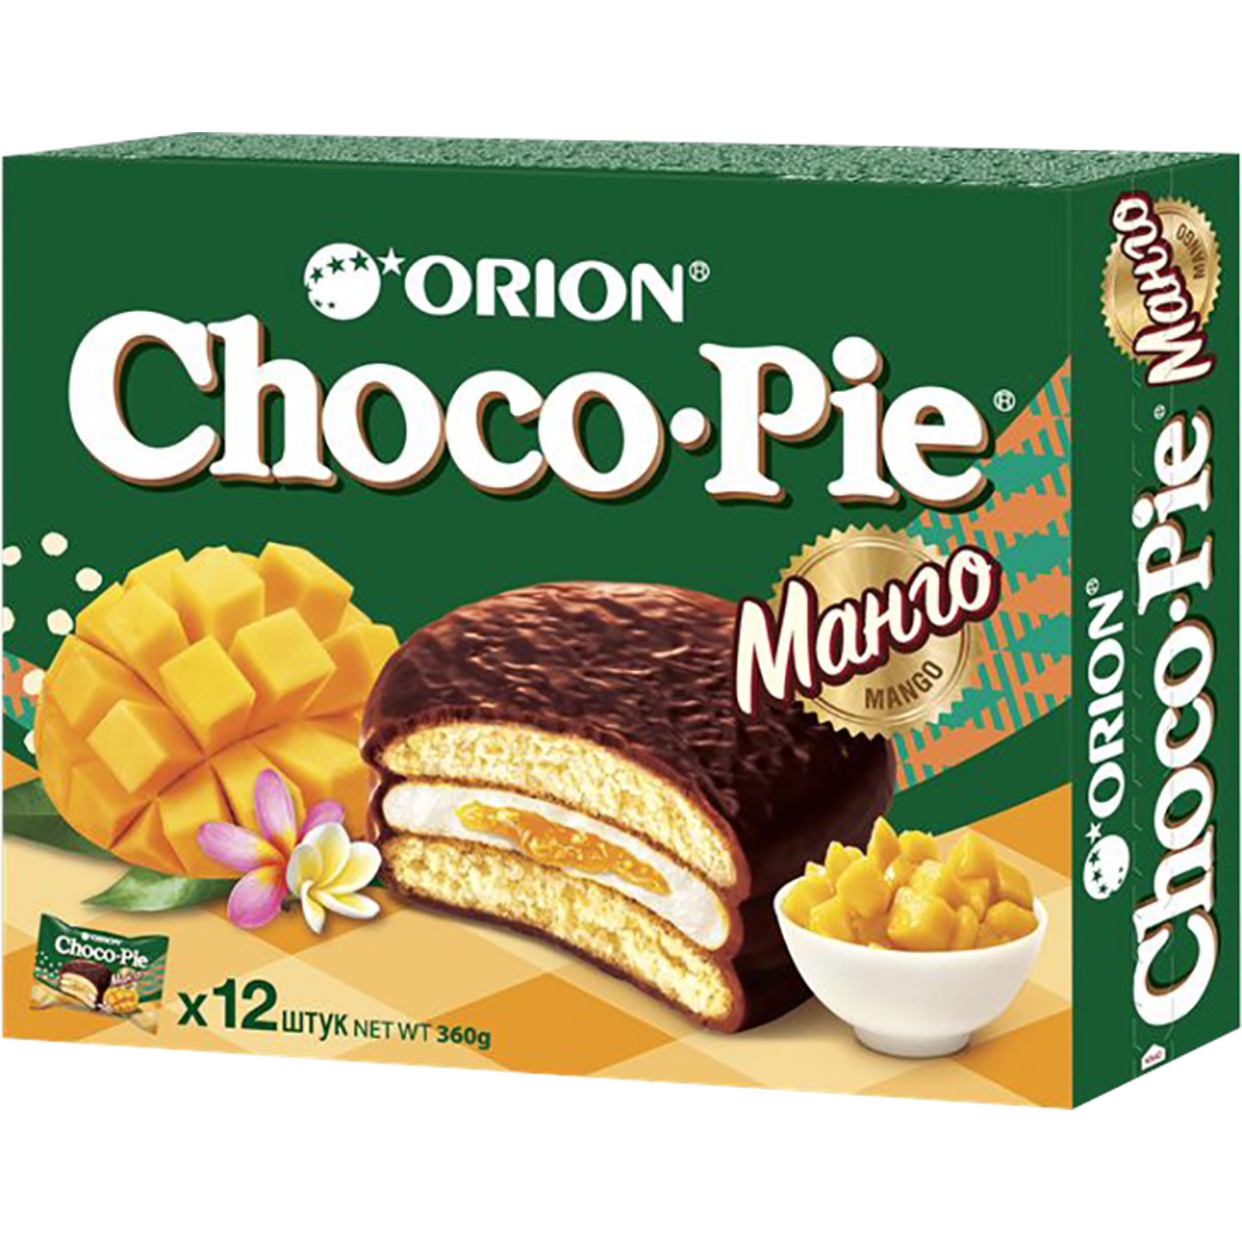 Мучное кондитерское изделие в глазури «Choco Pie Mango» («Чоко Пай Манго») 360г по акции в Пятерочке